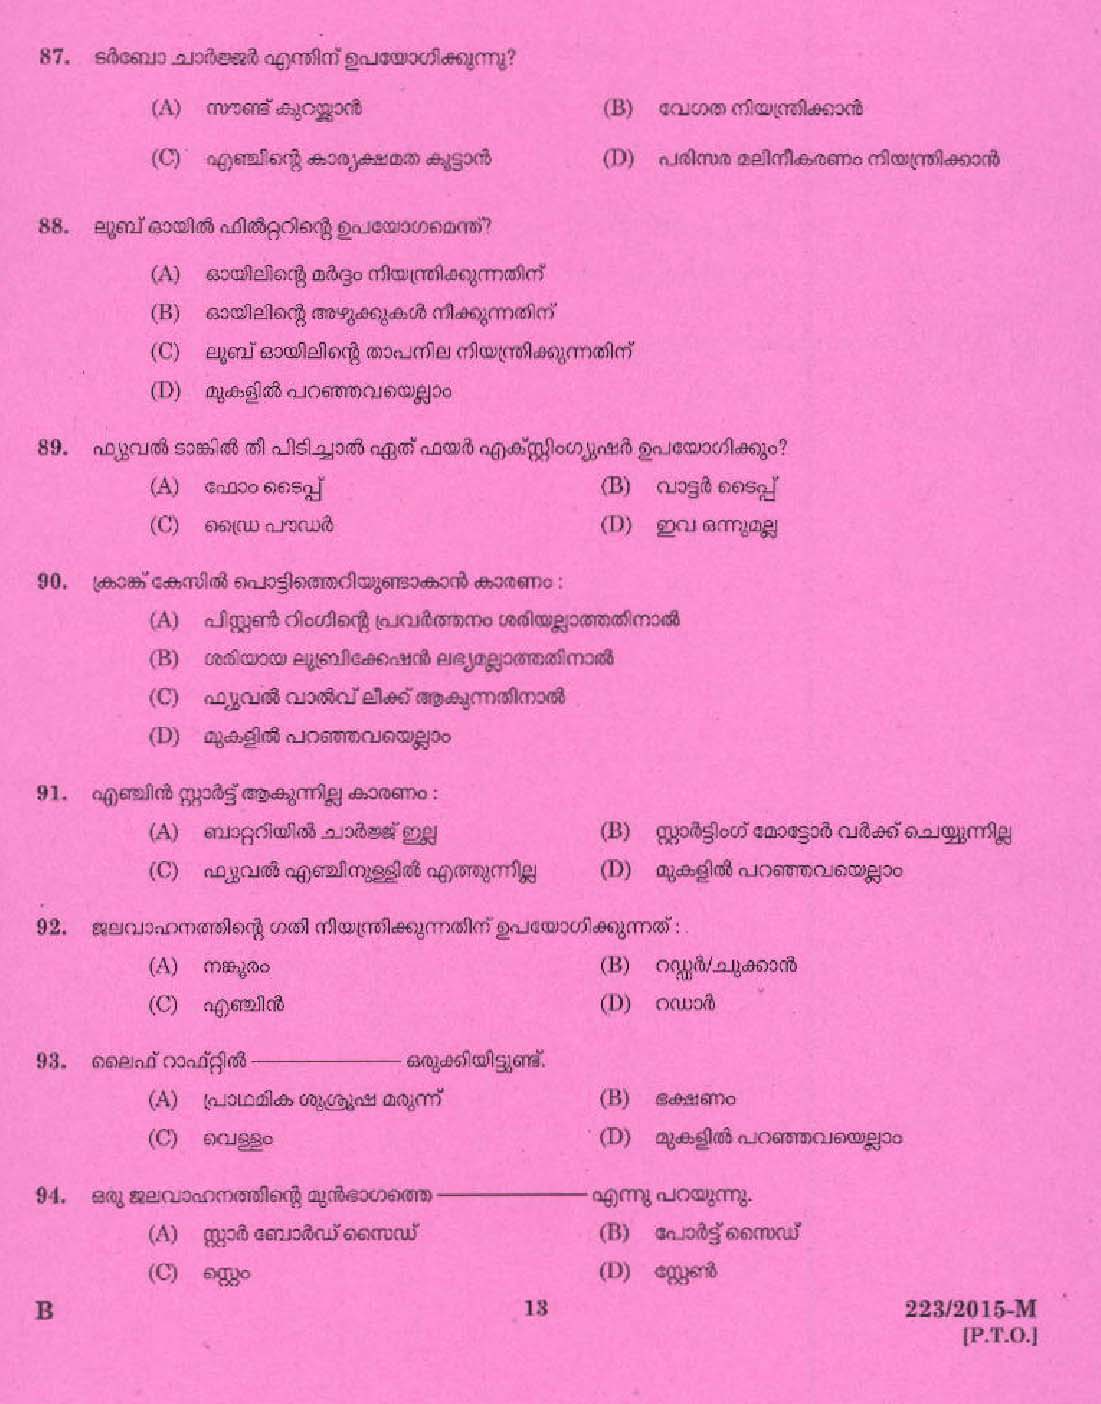 Kerala PSC Boat Driver Exam 2015 Question Paper Code 2232015 M 11